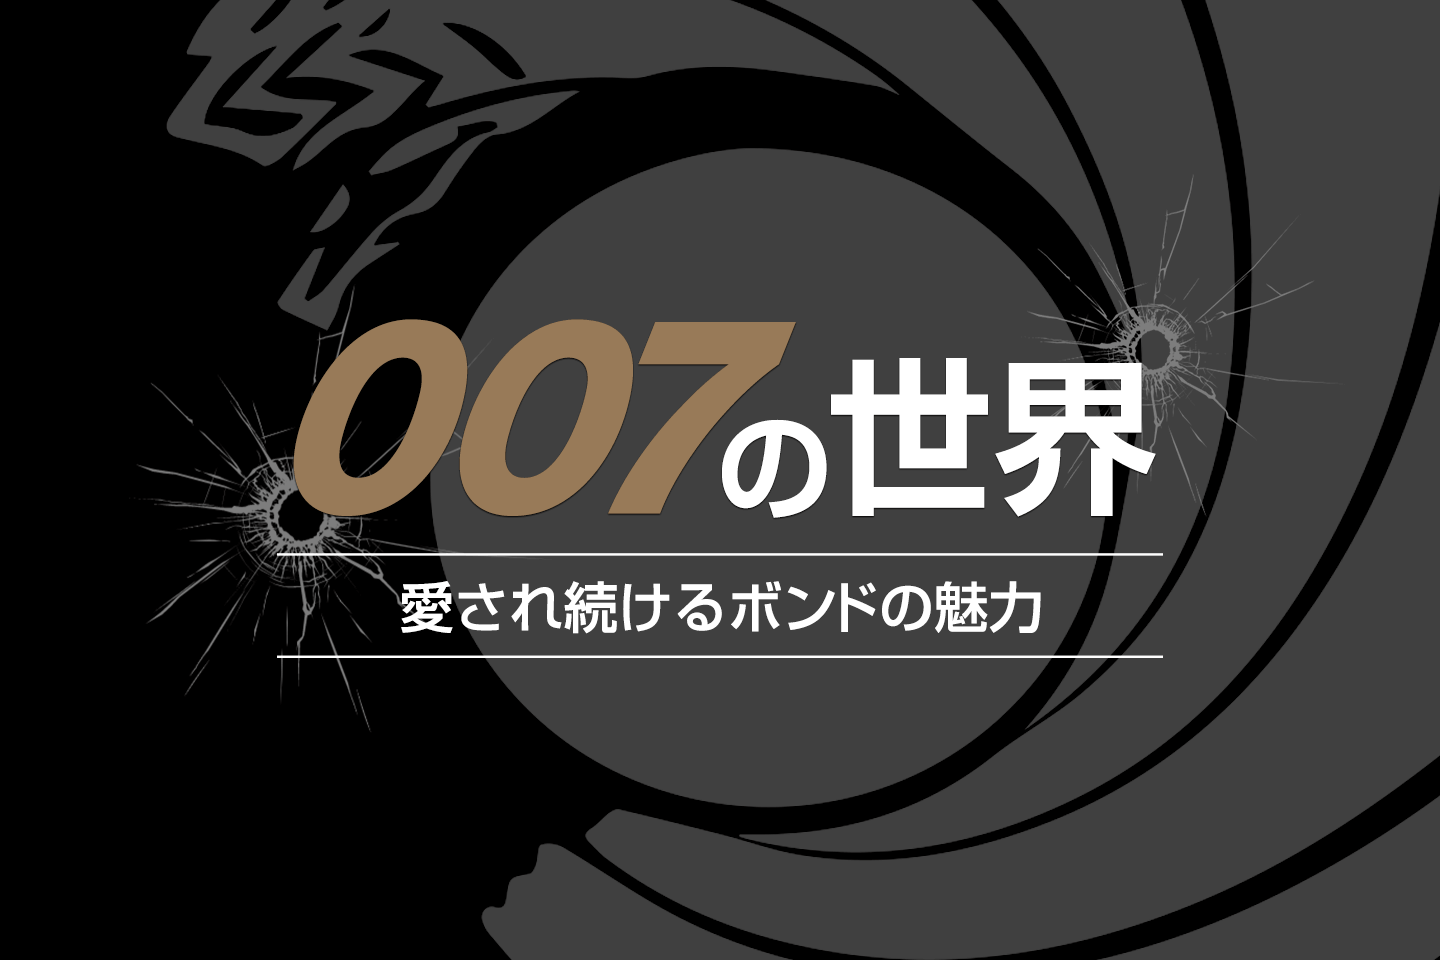 【特集：007の世界】 愛され続けるボンドの魅力